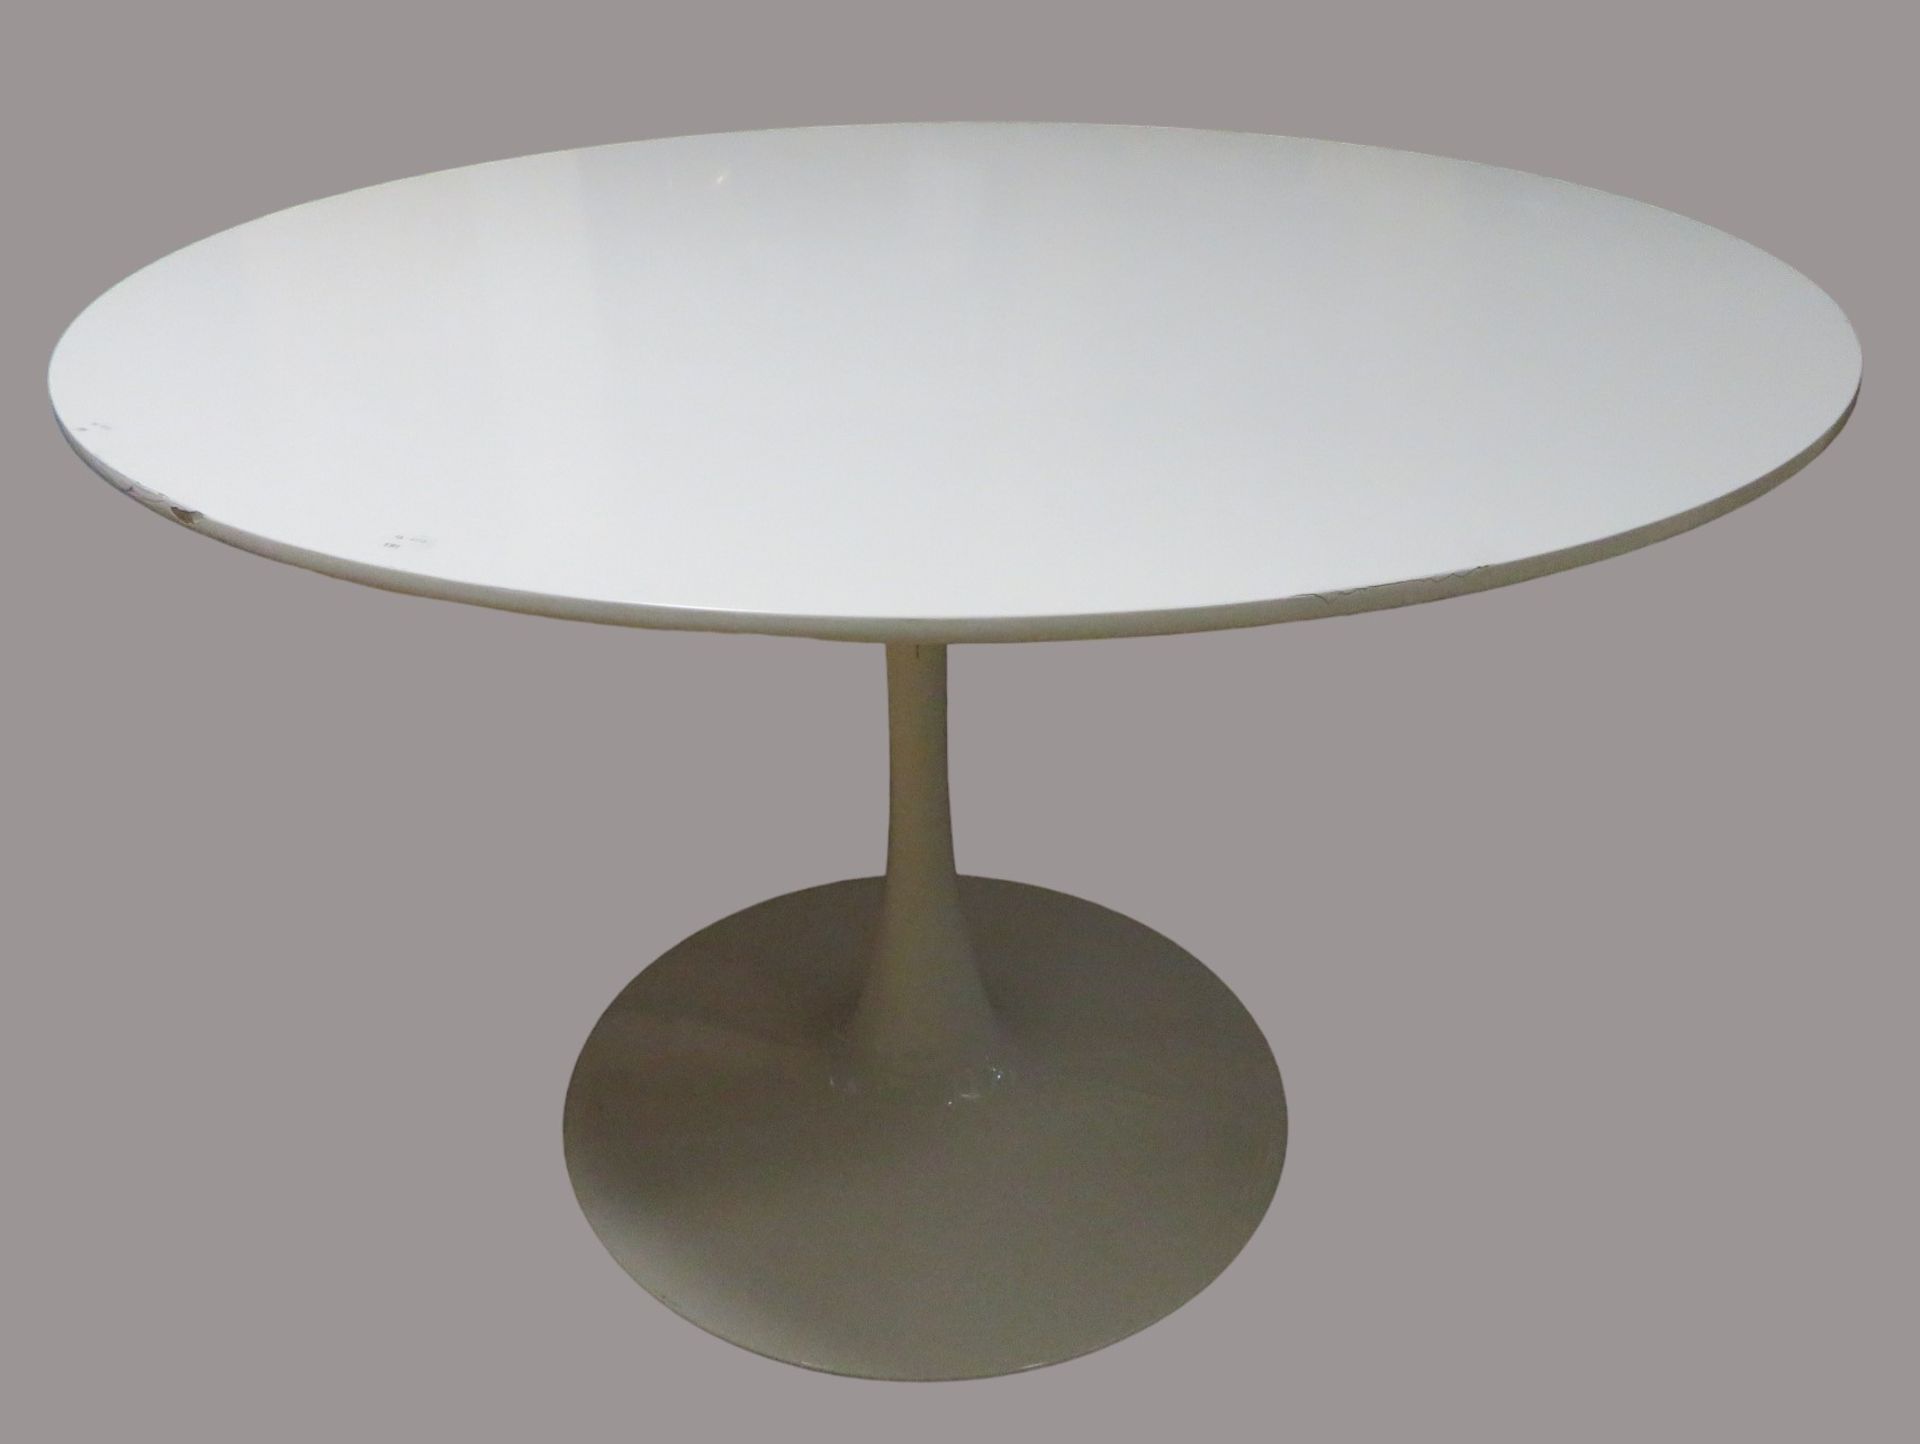 Tisch im Stil Eero Saarinens, Fuß Metall Weiß gelackt, Platte Schichtholz Weiß gelackt (besch.), h 